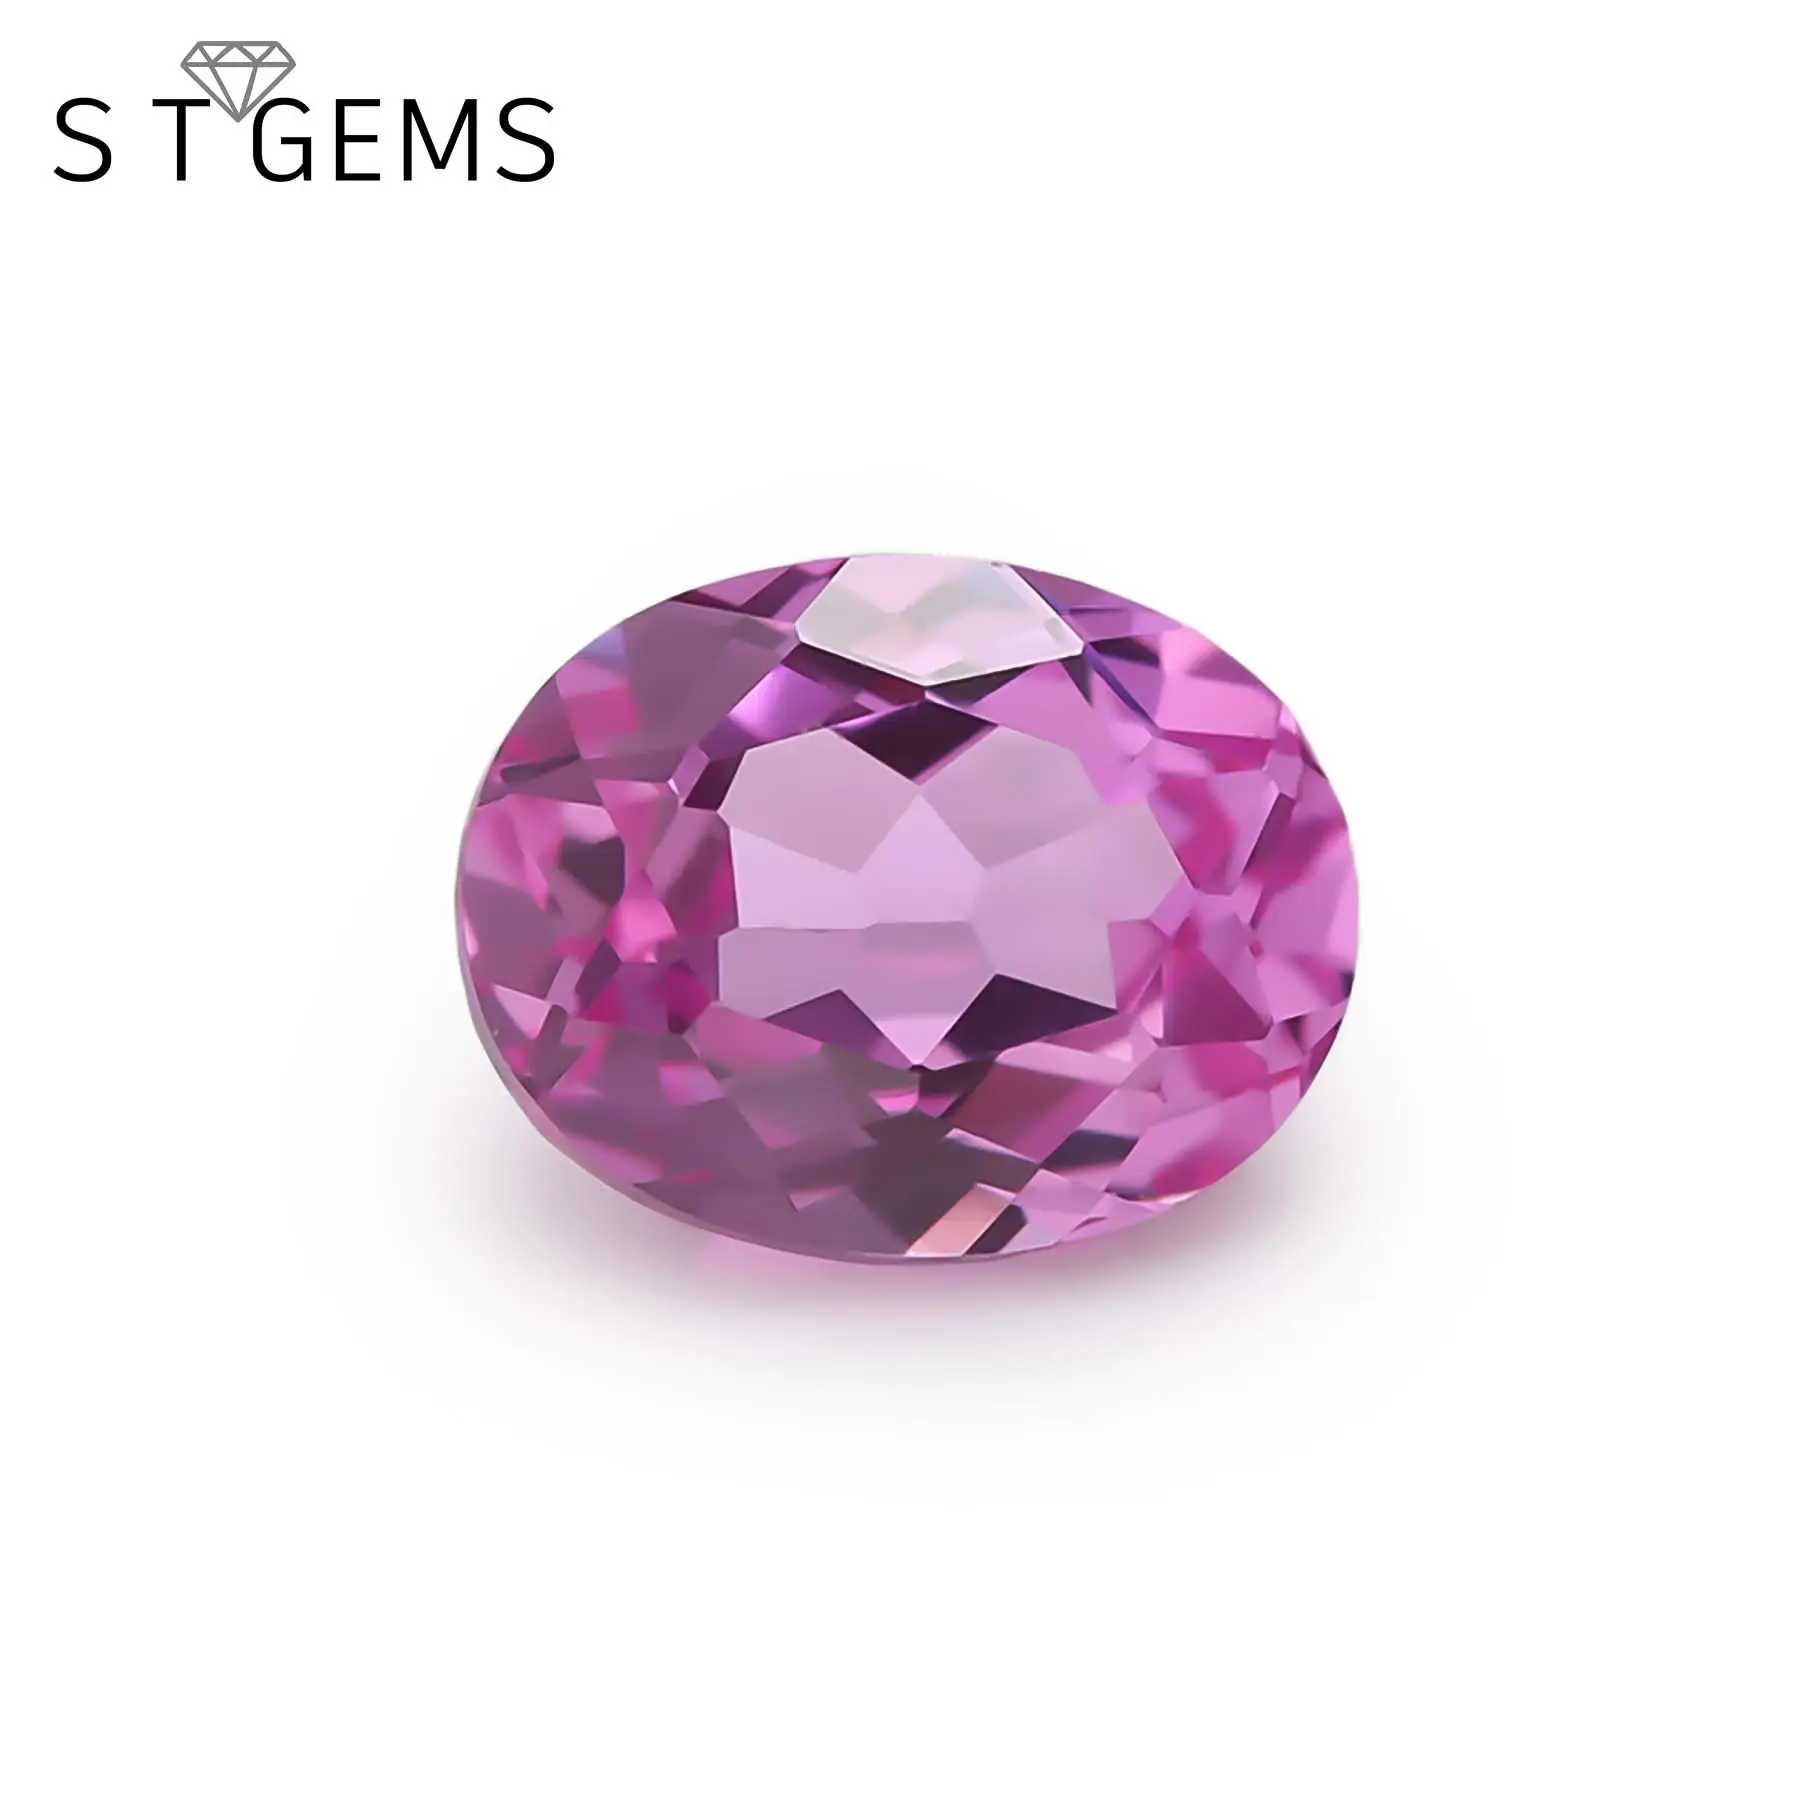 St gems pedra de corindo sintético rosa 2 # oval corte gems preços